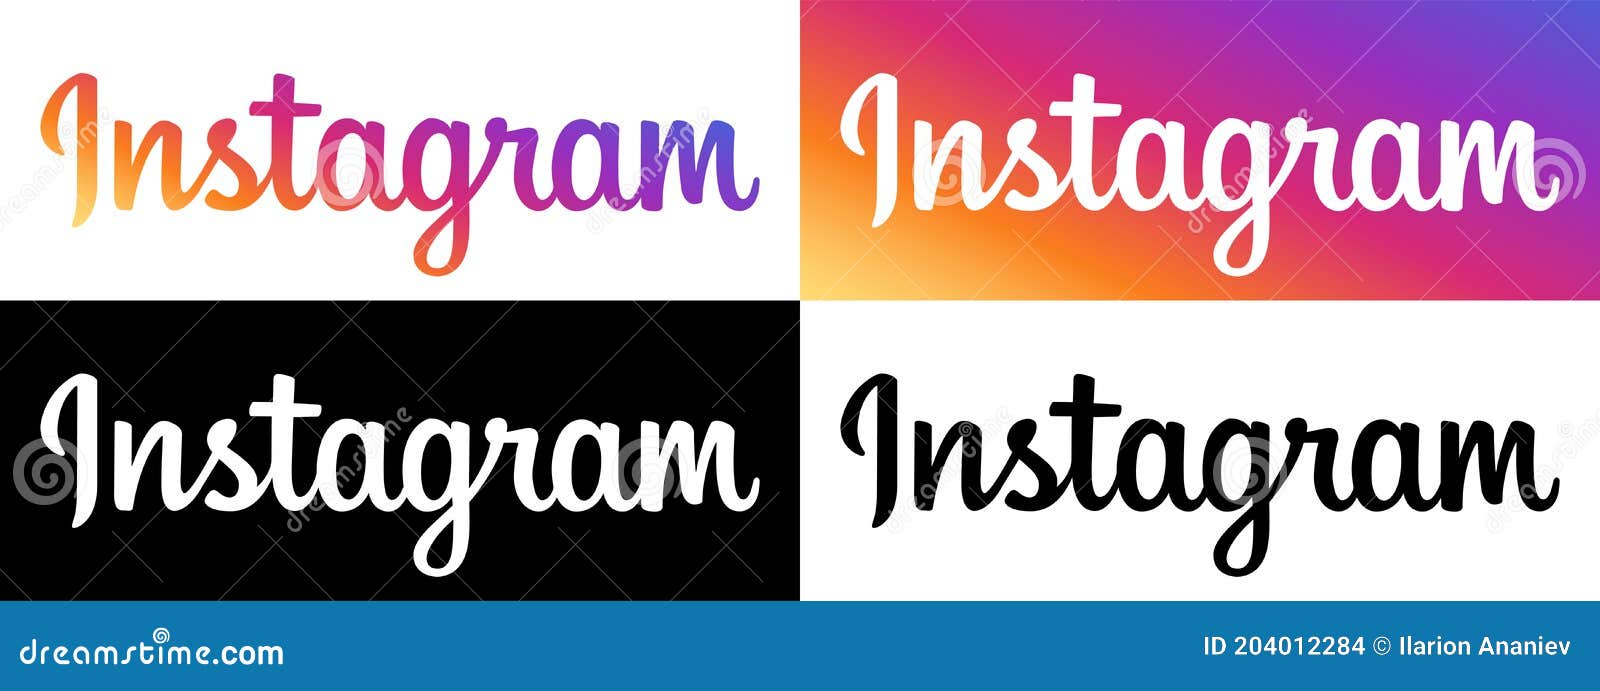 Instagram logo vector: Logo Instagram đã được thiết kế với độ chính xác và chi tiết cao hơn bao giờ hết! Sử dụng vector trong logo giúp Instagram trông rõ ràng hơn và tạo ra một độ tương phản cao hơn với các phông chữ khác. Điều này đảm bảo rằng Instagram vẫn là một trong những thương hiệu đáng tin cậy nhất trên internet.